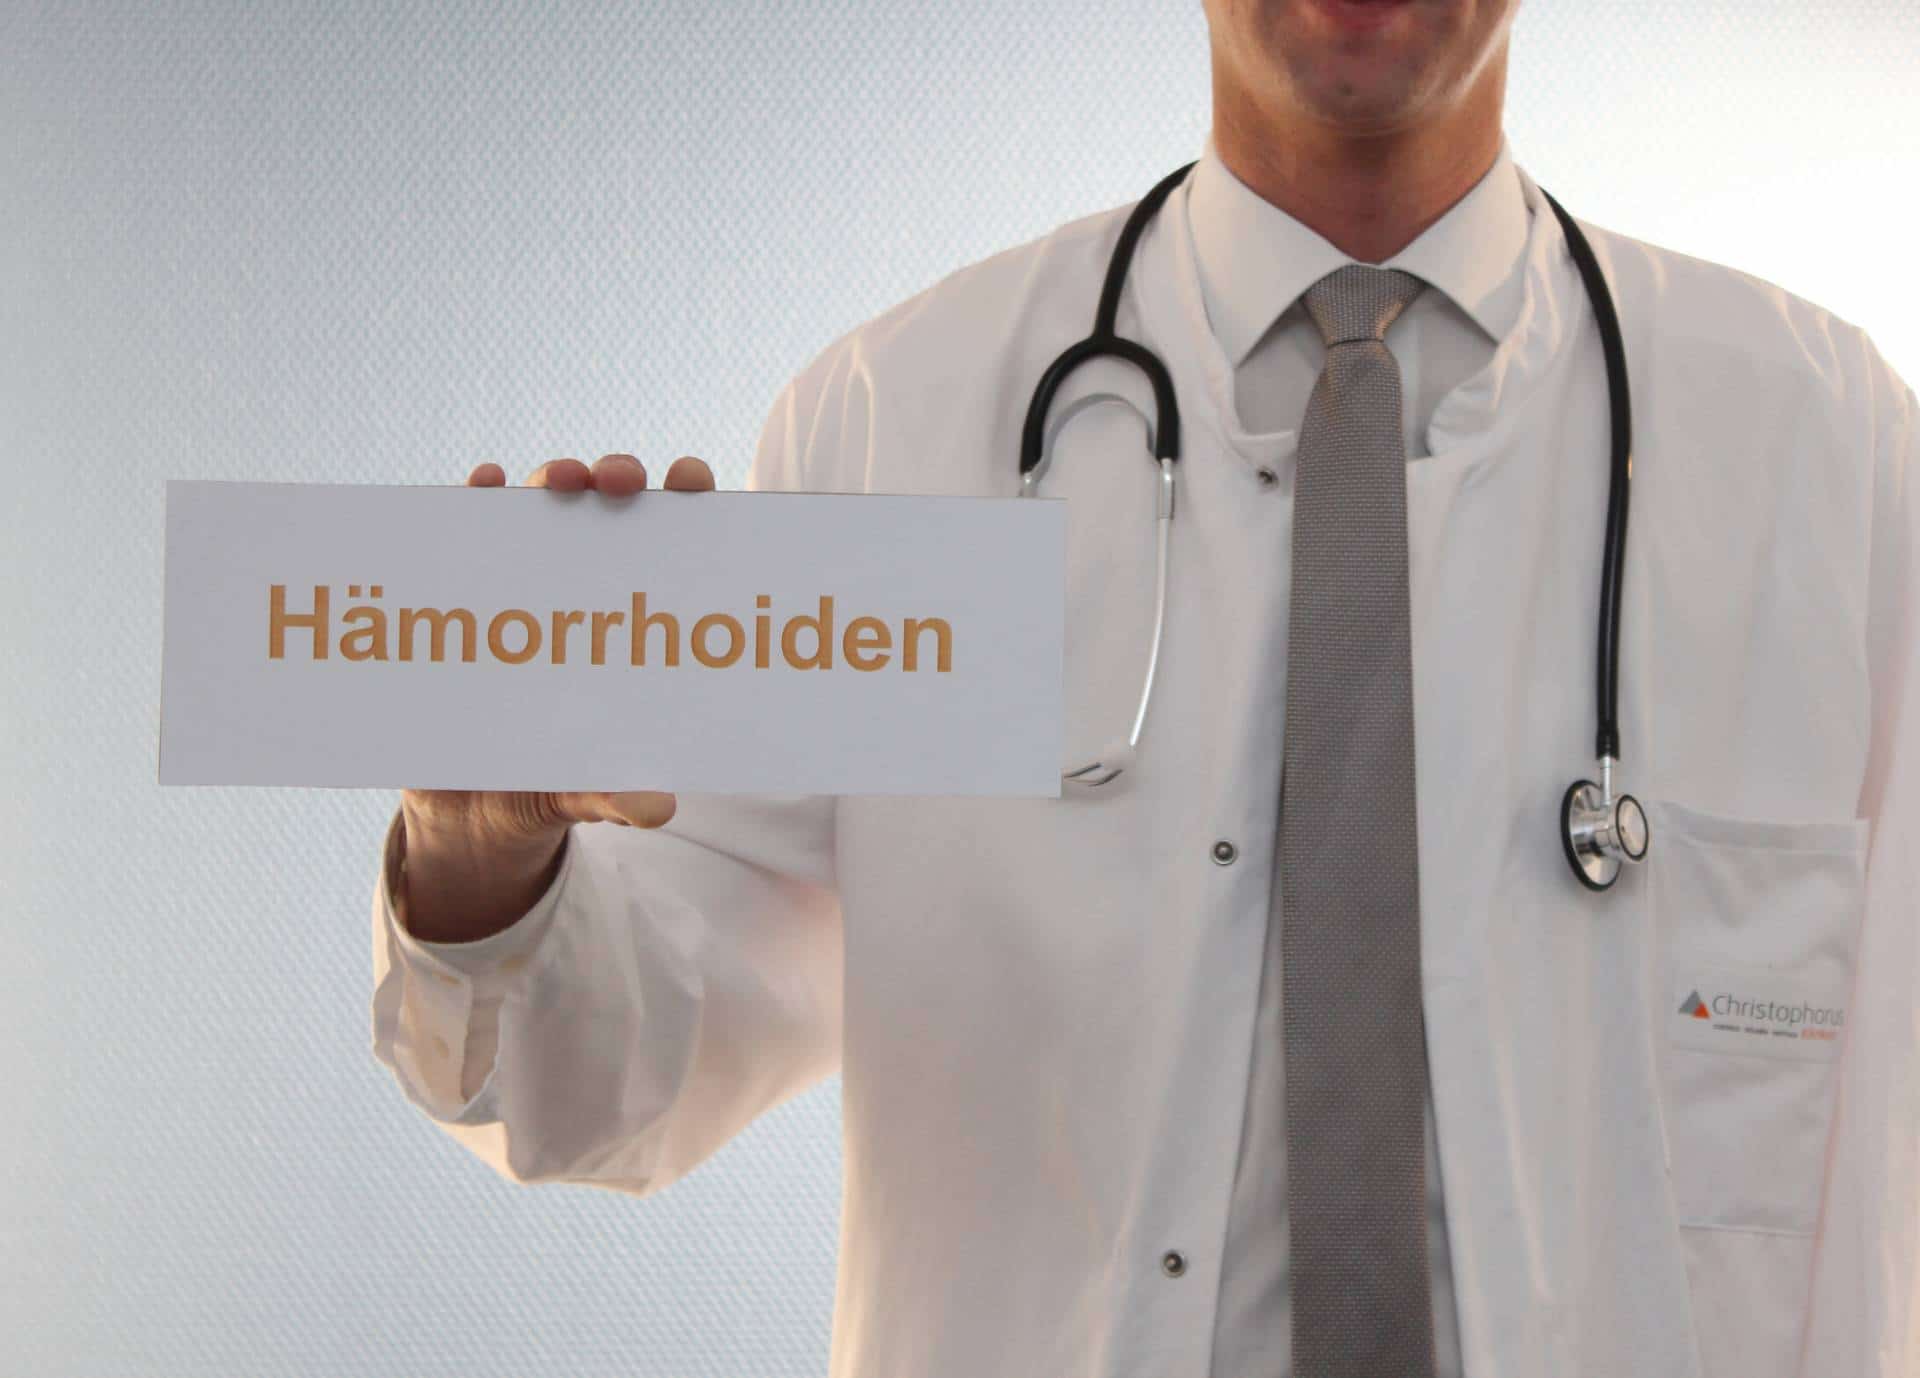 Vortrag: Hämorrhoiden & Co. - eine Volkskrankheit. Medizinische Möglichkeiten bei Hämorrhoiden, Fisteln, Fissuren und Entleerungsstörungen.